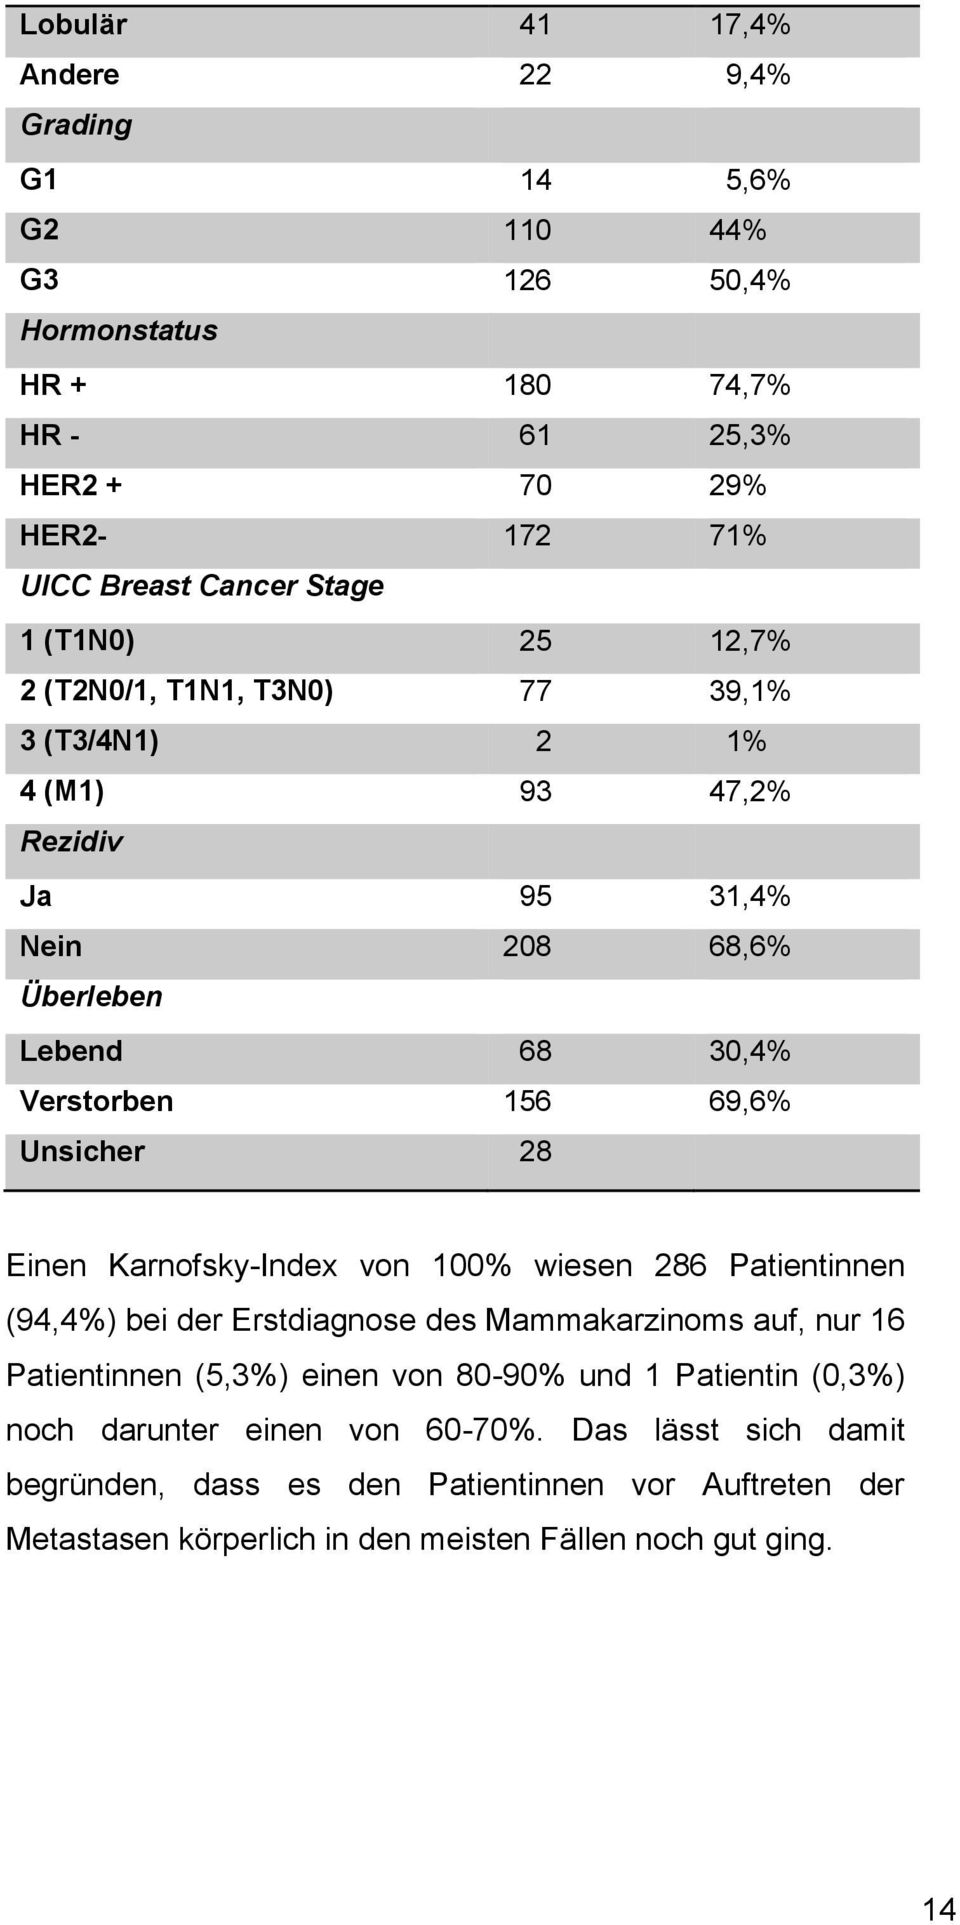 28 Einen Karnofsky-Index von 100% wiesen 286 Patientinnen (94,4%) bei der Erstdiagnose des Mammakarzinoms auf, nur 16 Patientinnen (5,3%) einen von 80-90% und 1 Patientin